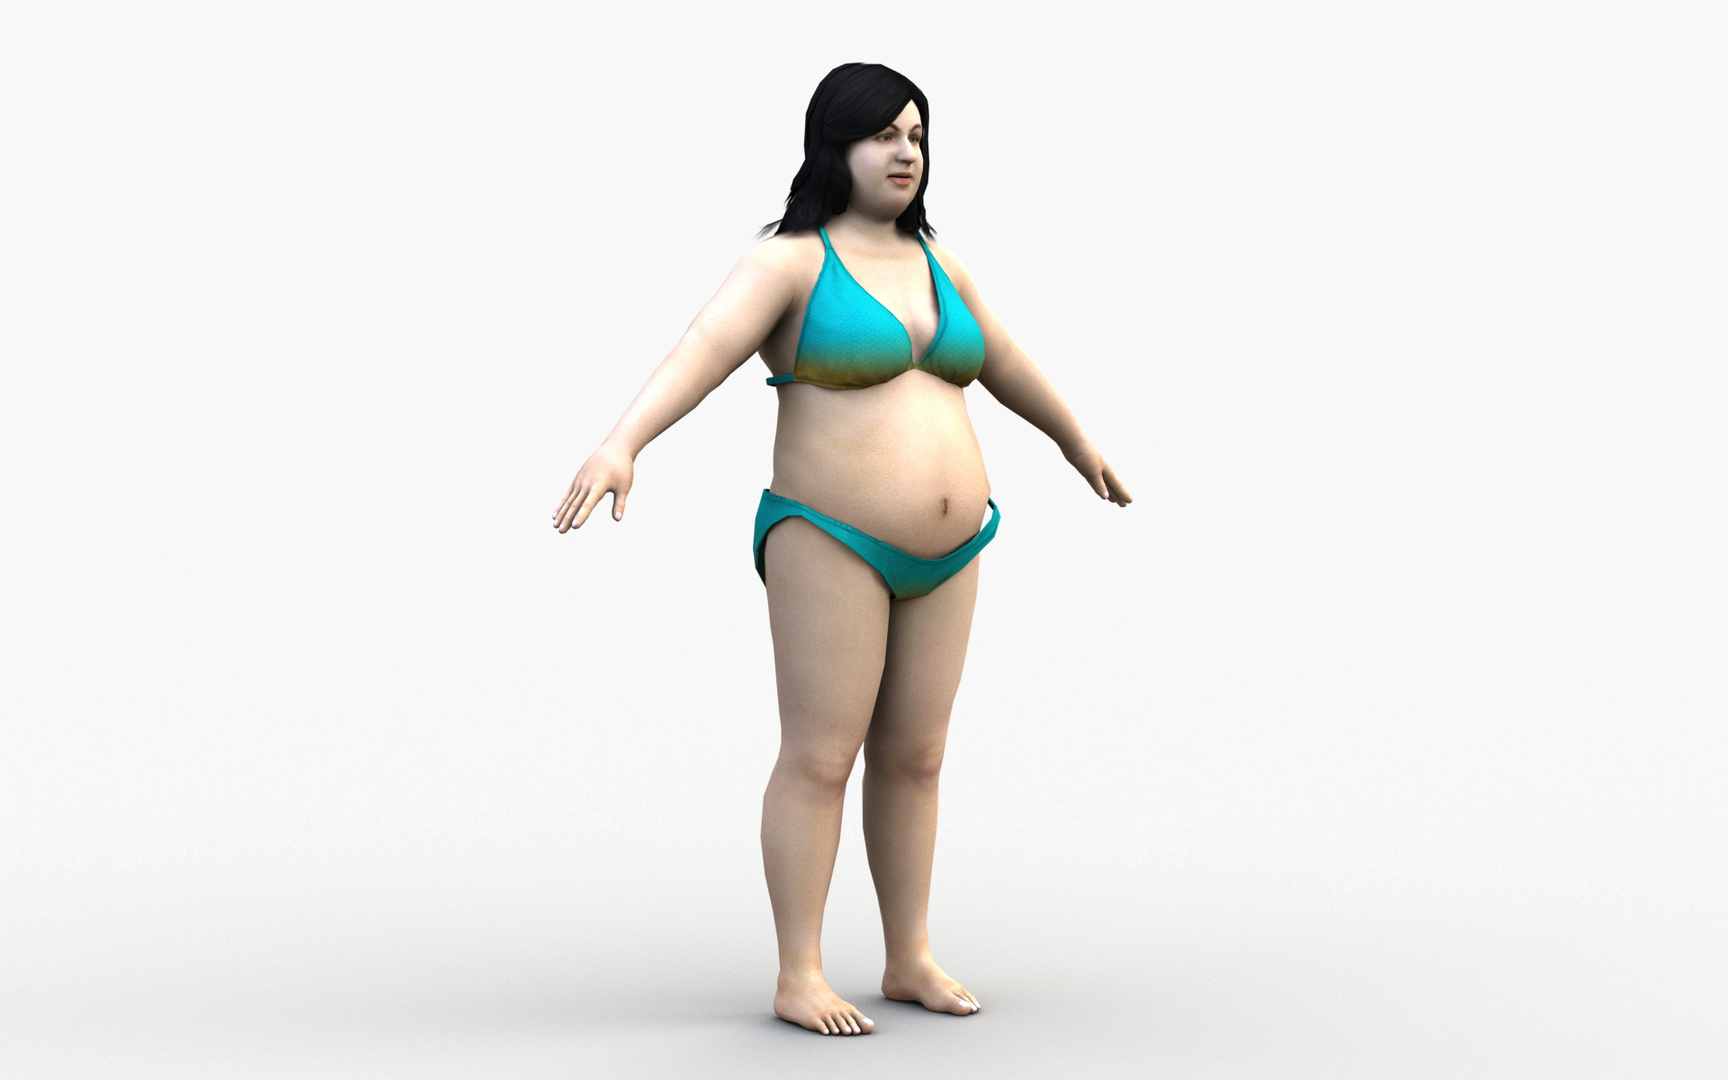 cooper pearce recommends fat chic in bikini pic